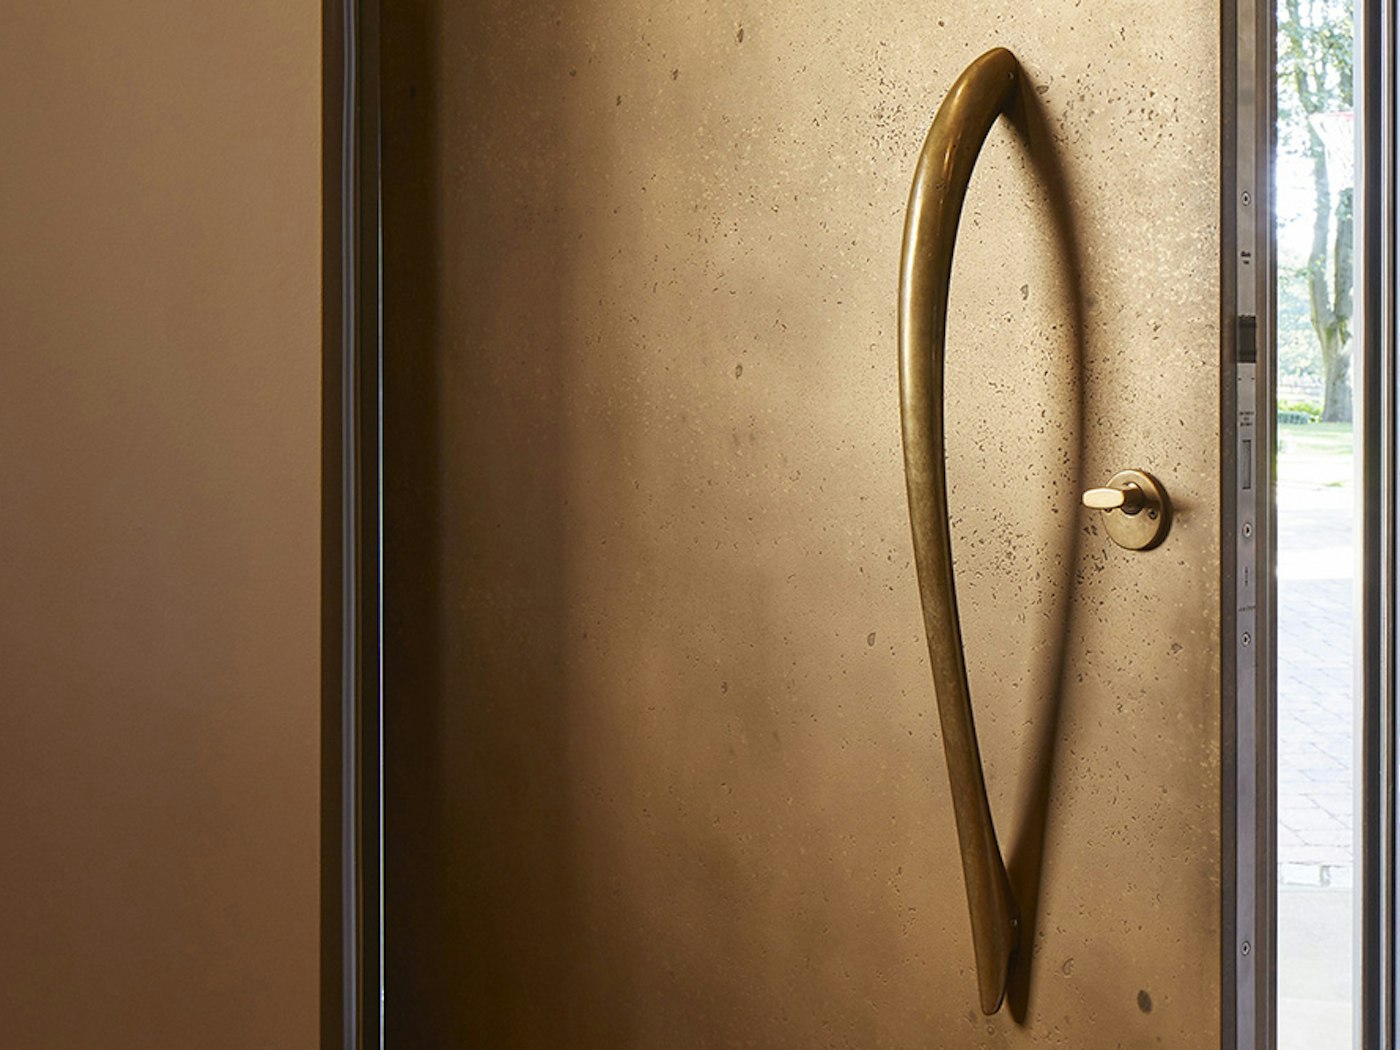 bz4 bronze handle on a vintage bronze door urbanfront